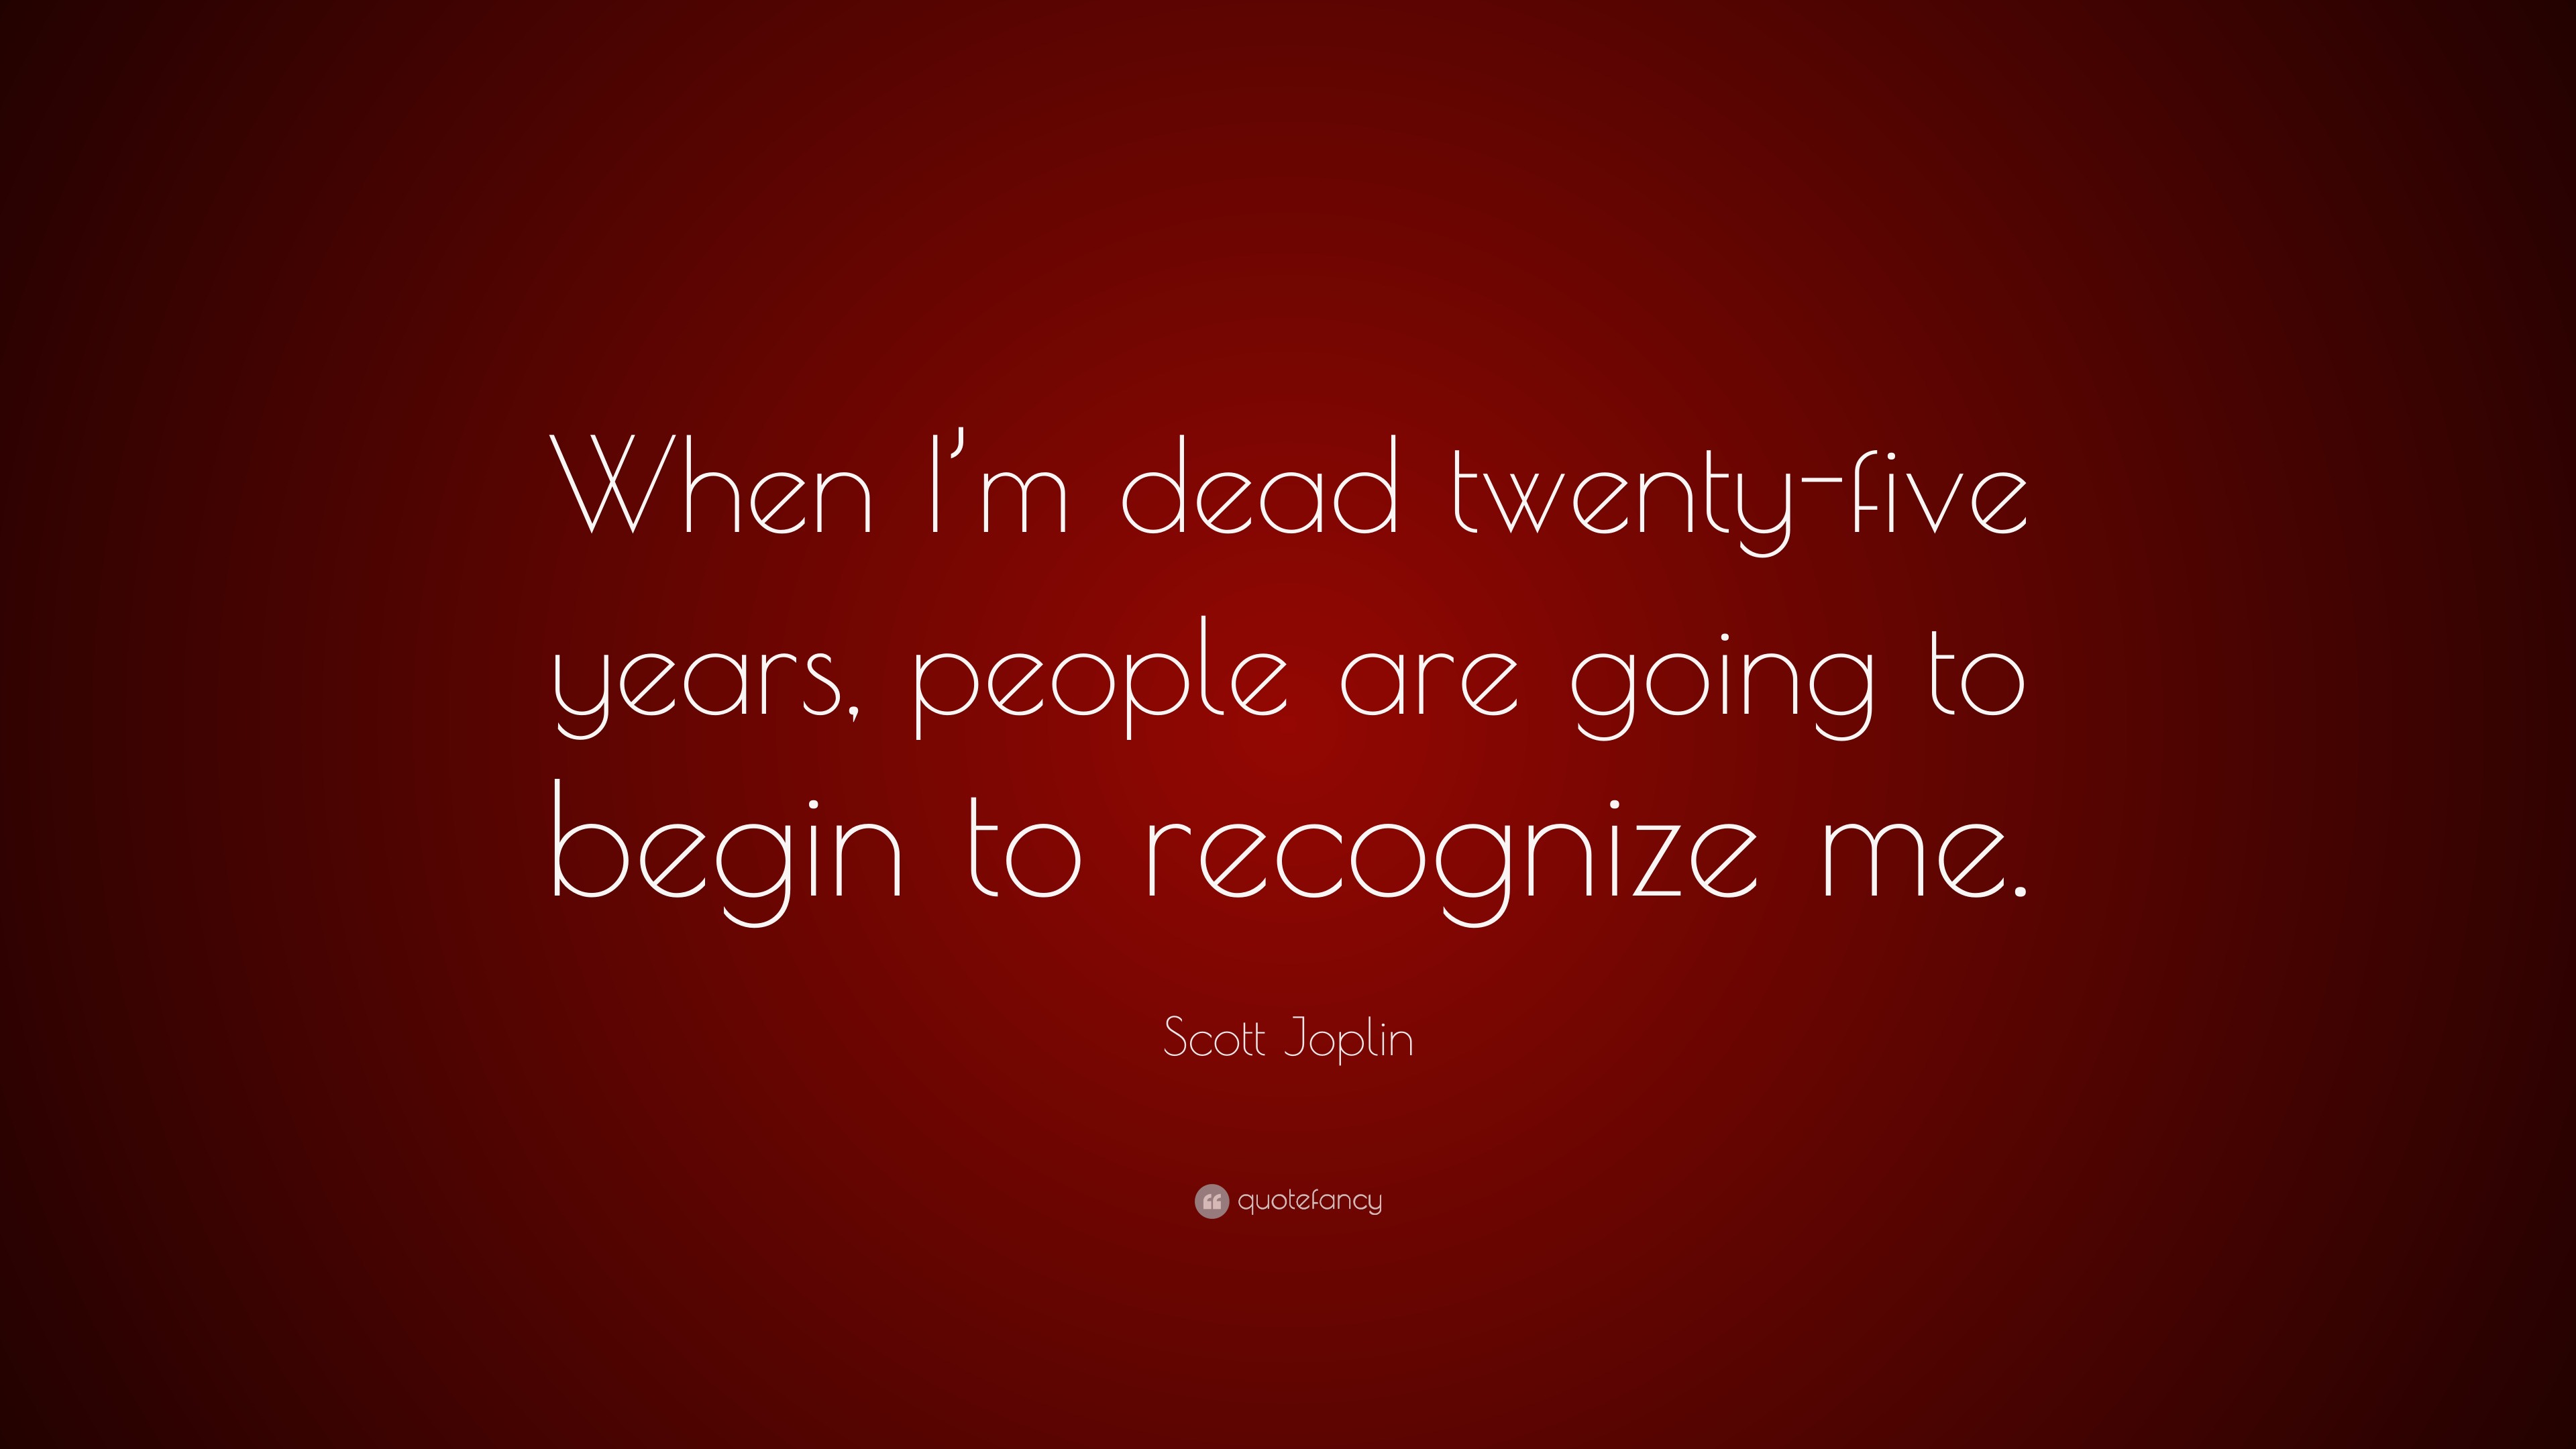 Top 6 Scott Joplin Quotes 2021 Update Quotefancy